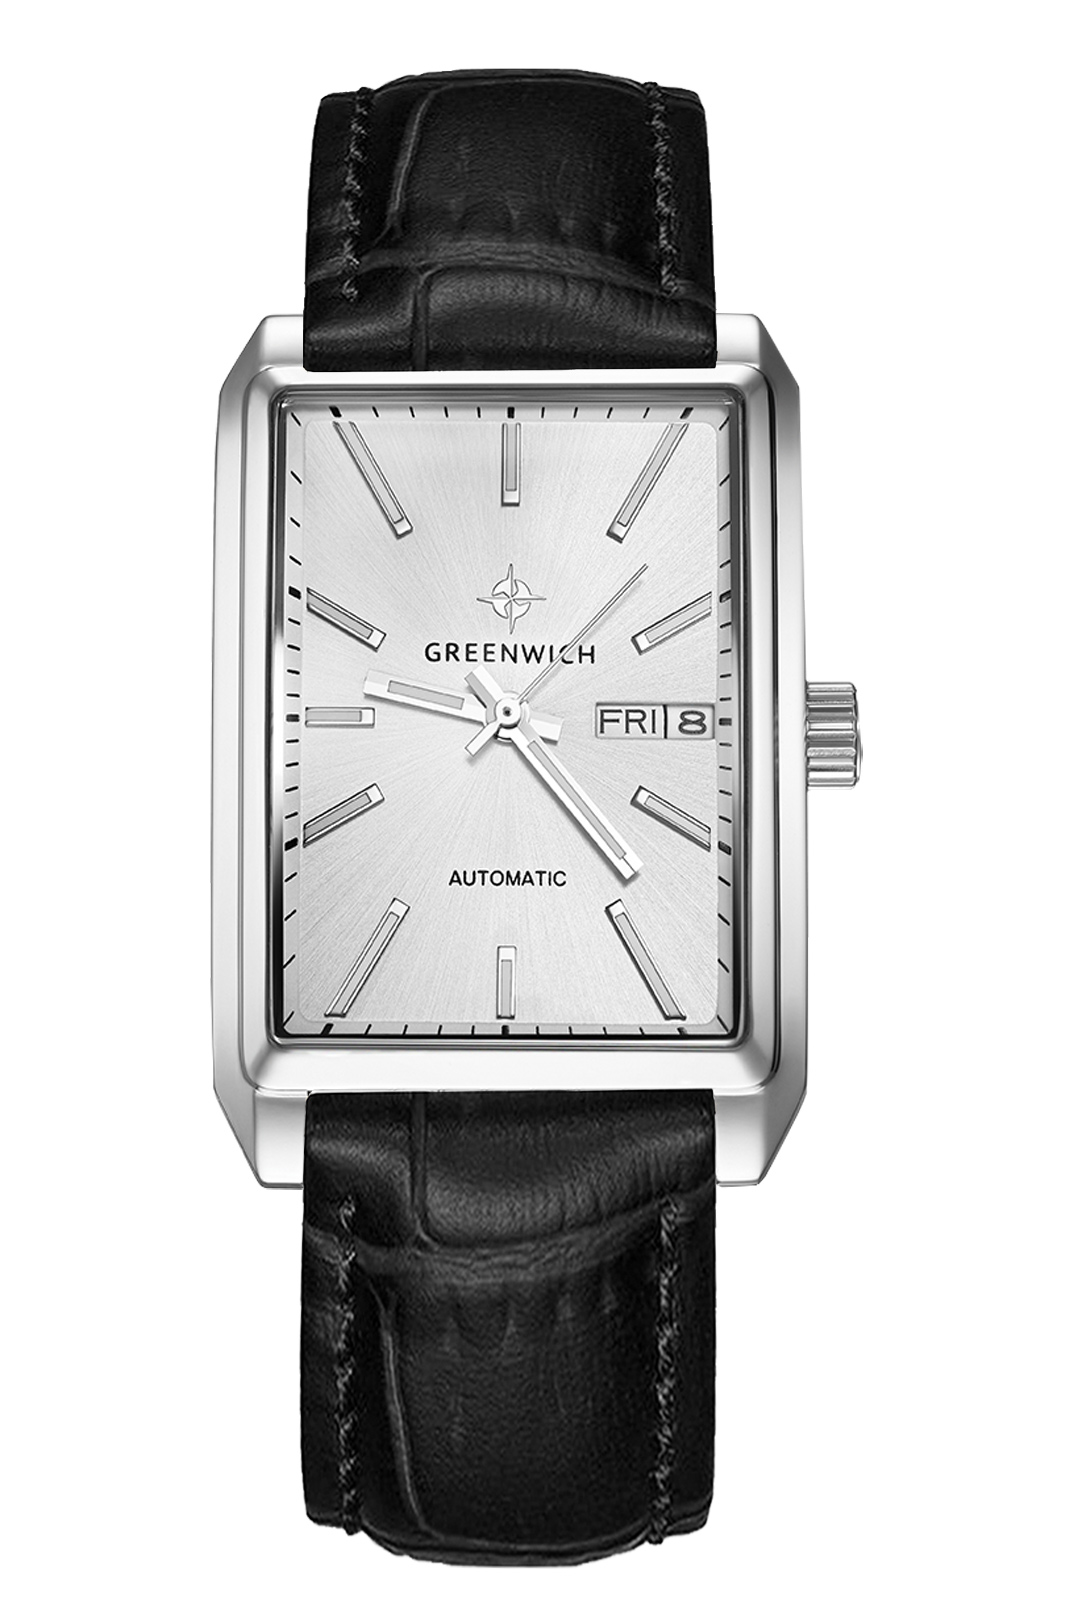 GW 564.11.13, часы наручные Greenwich Caravel